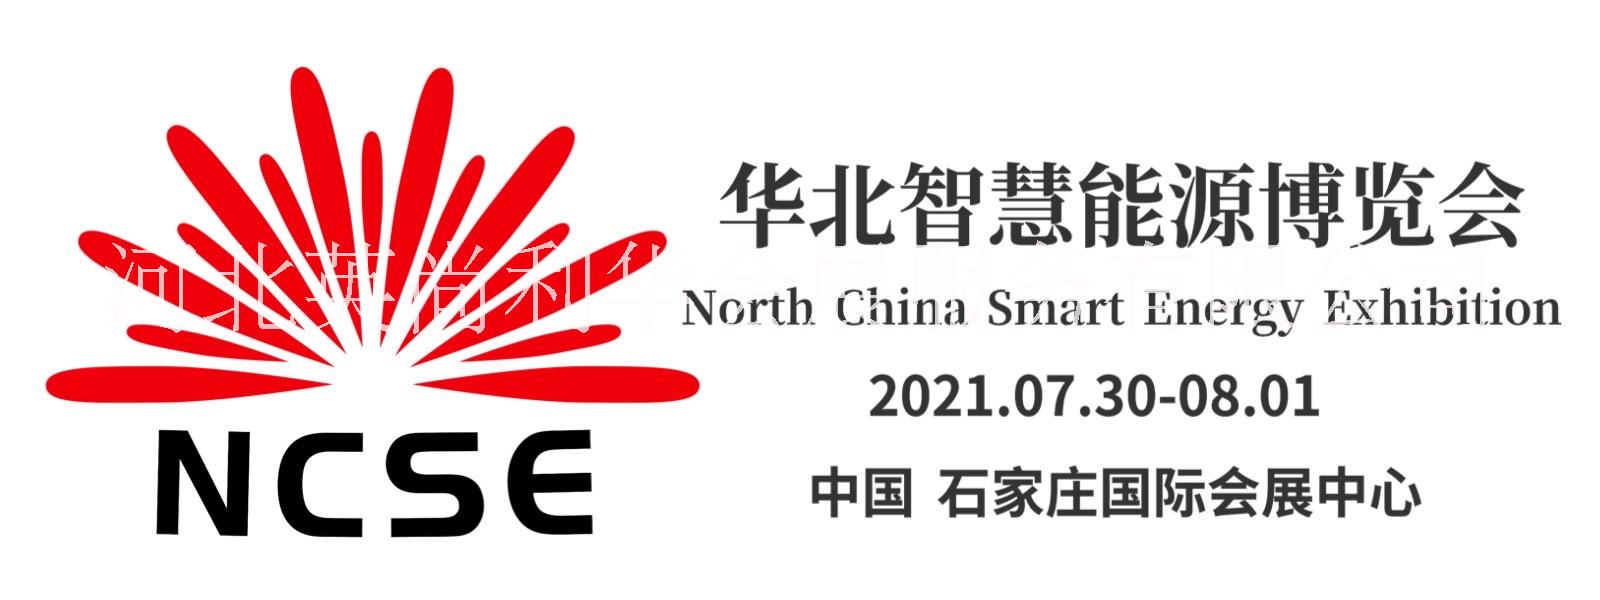 2021年中国新能源产业展览会批发